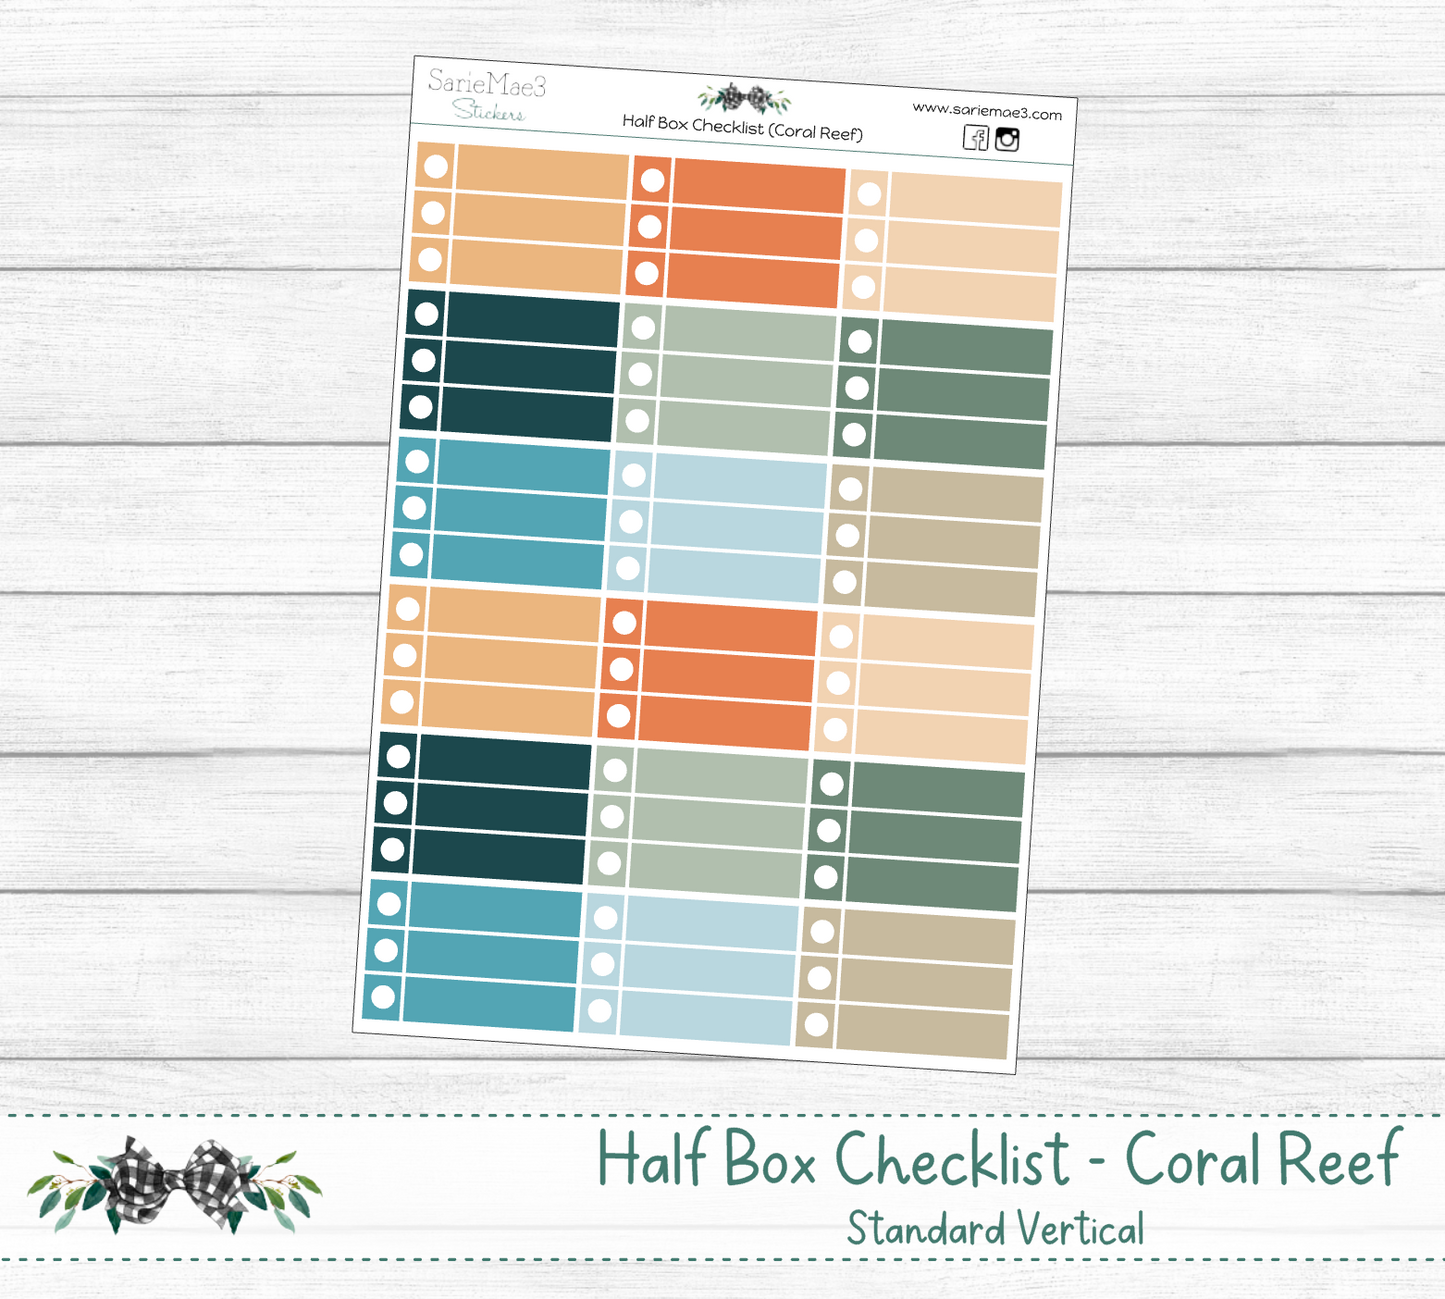 Half Box Checklists (Coral Reef)